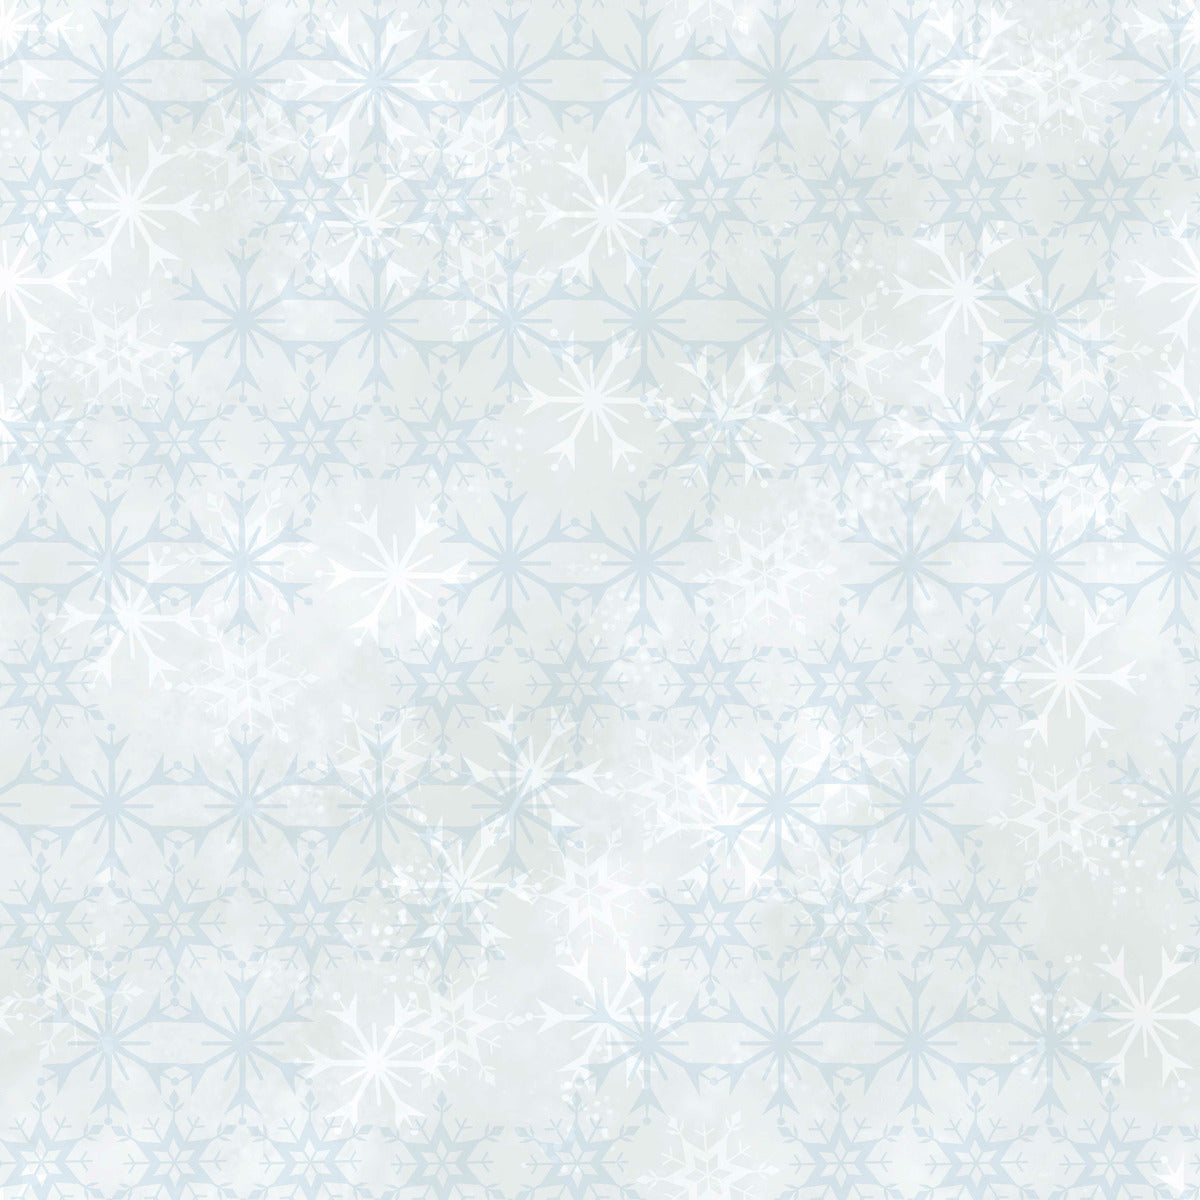 Disney Kids Vol. 4 Frozen 2 Snowflake Wallpaper - SAMPLE